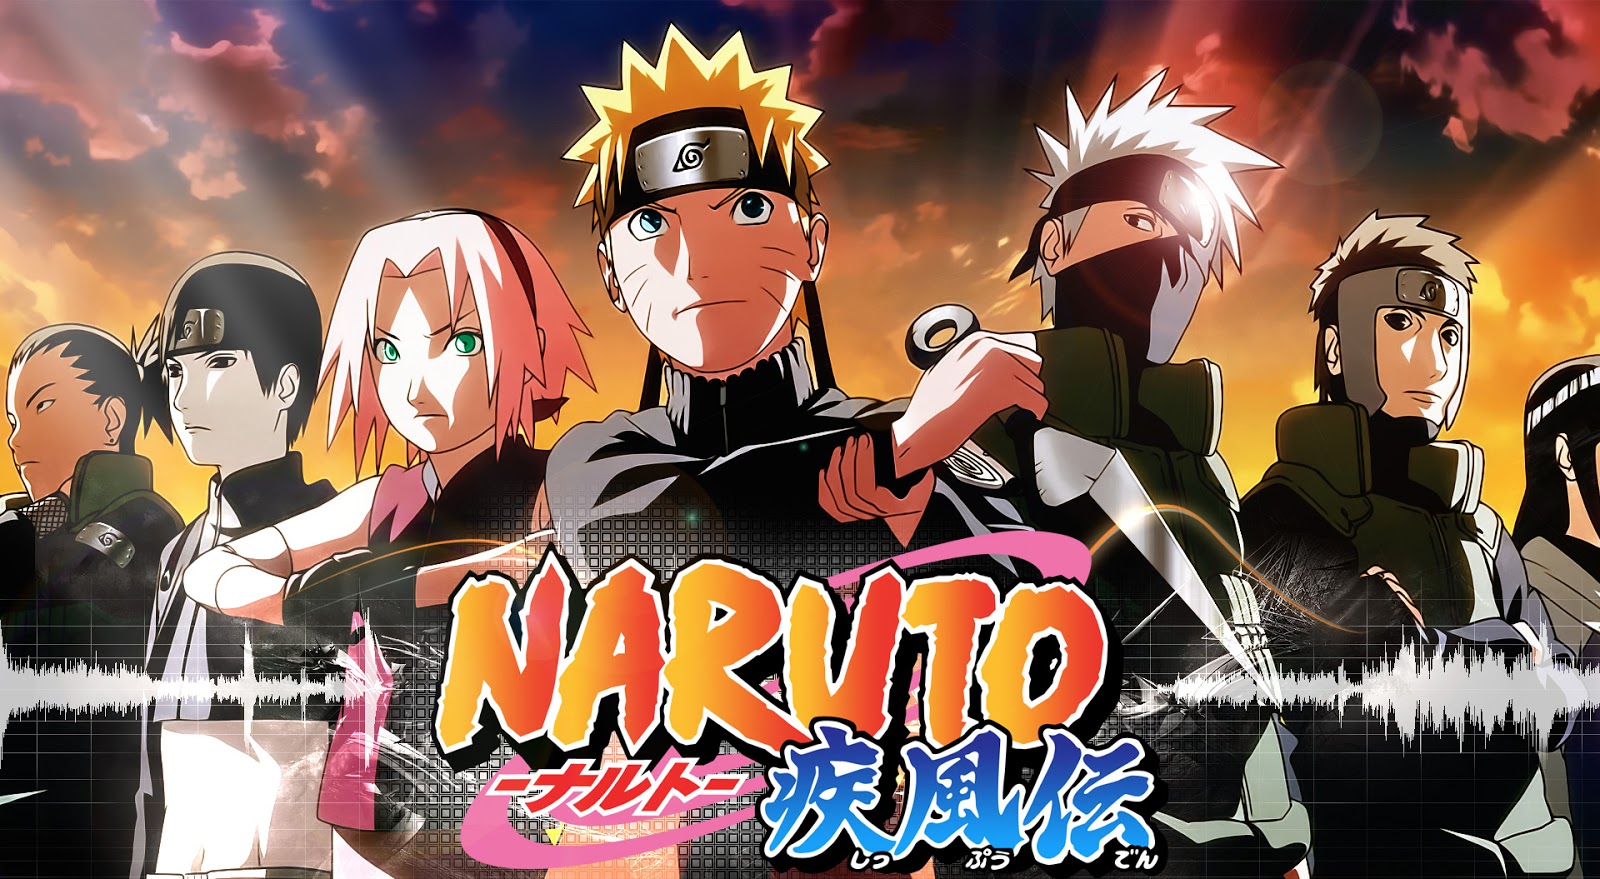 مشاهدة ناروتو شيبودن الحلقة 468 مترجم للعربية Naruto Shippuden بجودة عالية Hd